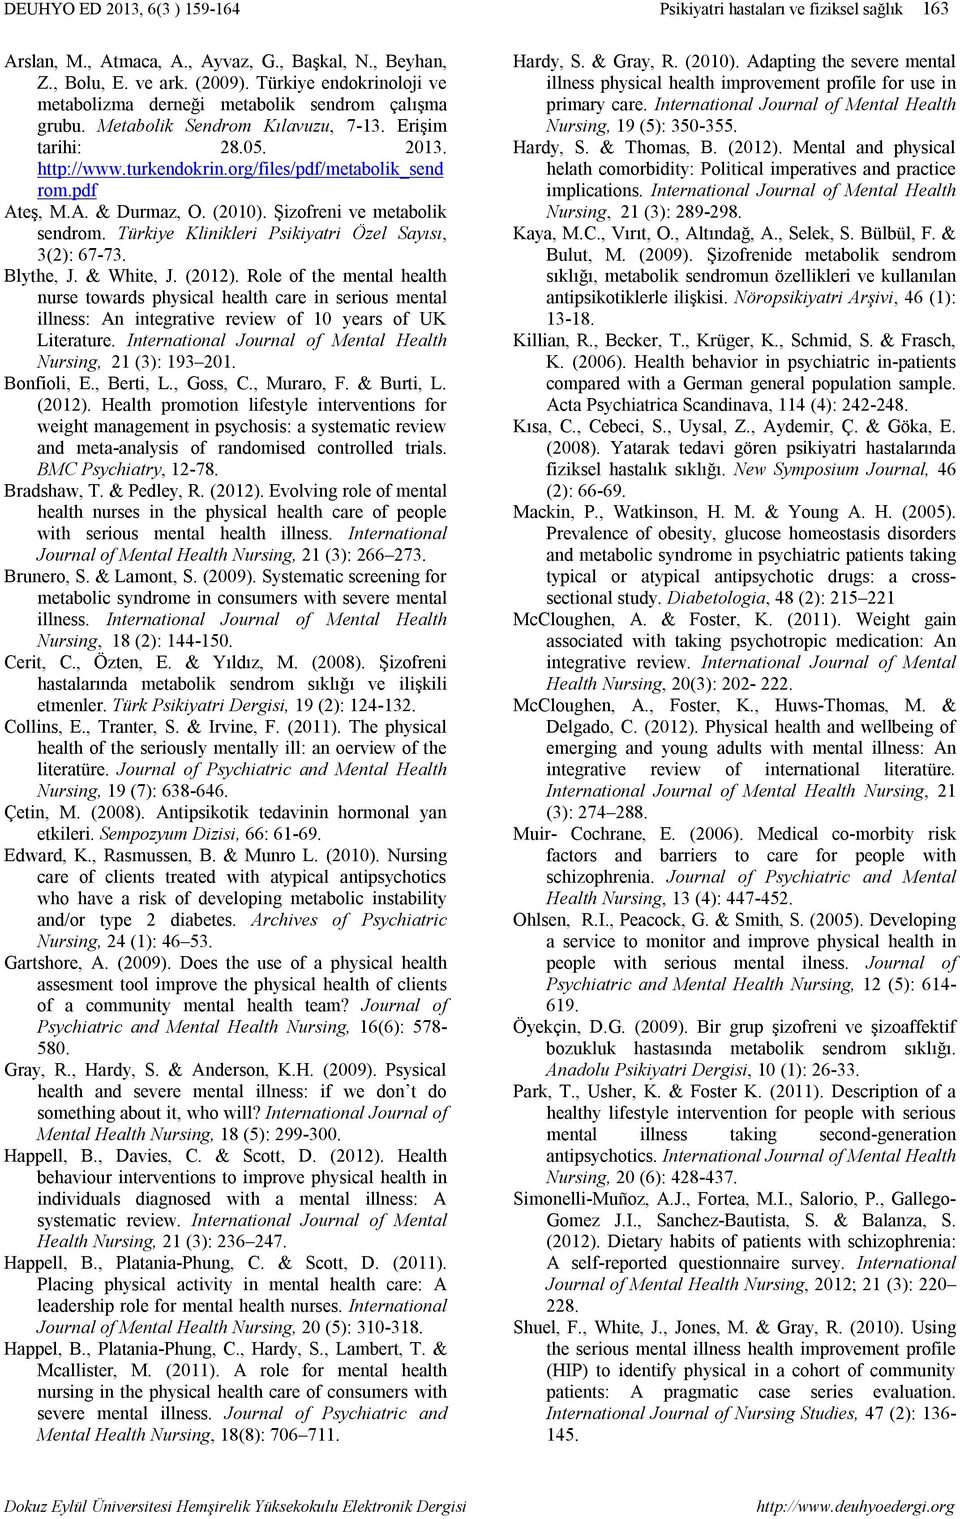 pdf Ateş, M.A. & Durmaz, O. (2010). Şizofreni ve metabolik sendrom. Türkiye Klinikleri Psikiyatri Özel Sayısı, 3(2): 67-73. Blythe, J. & White, J. (2012).